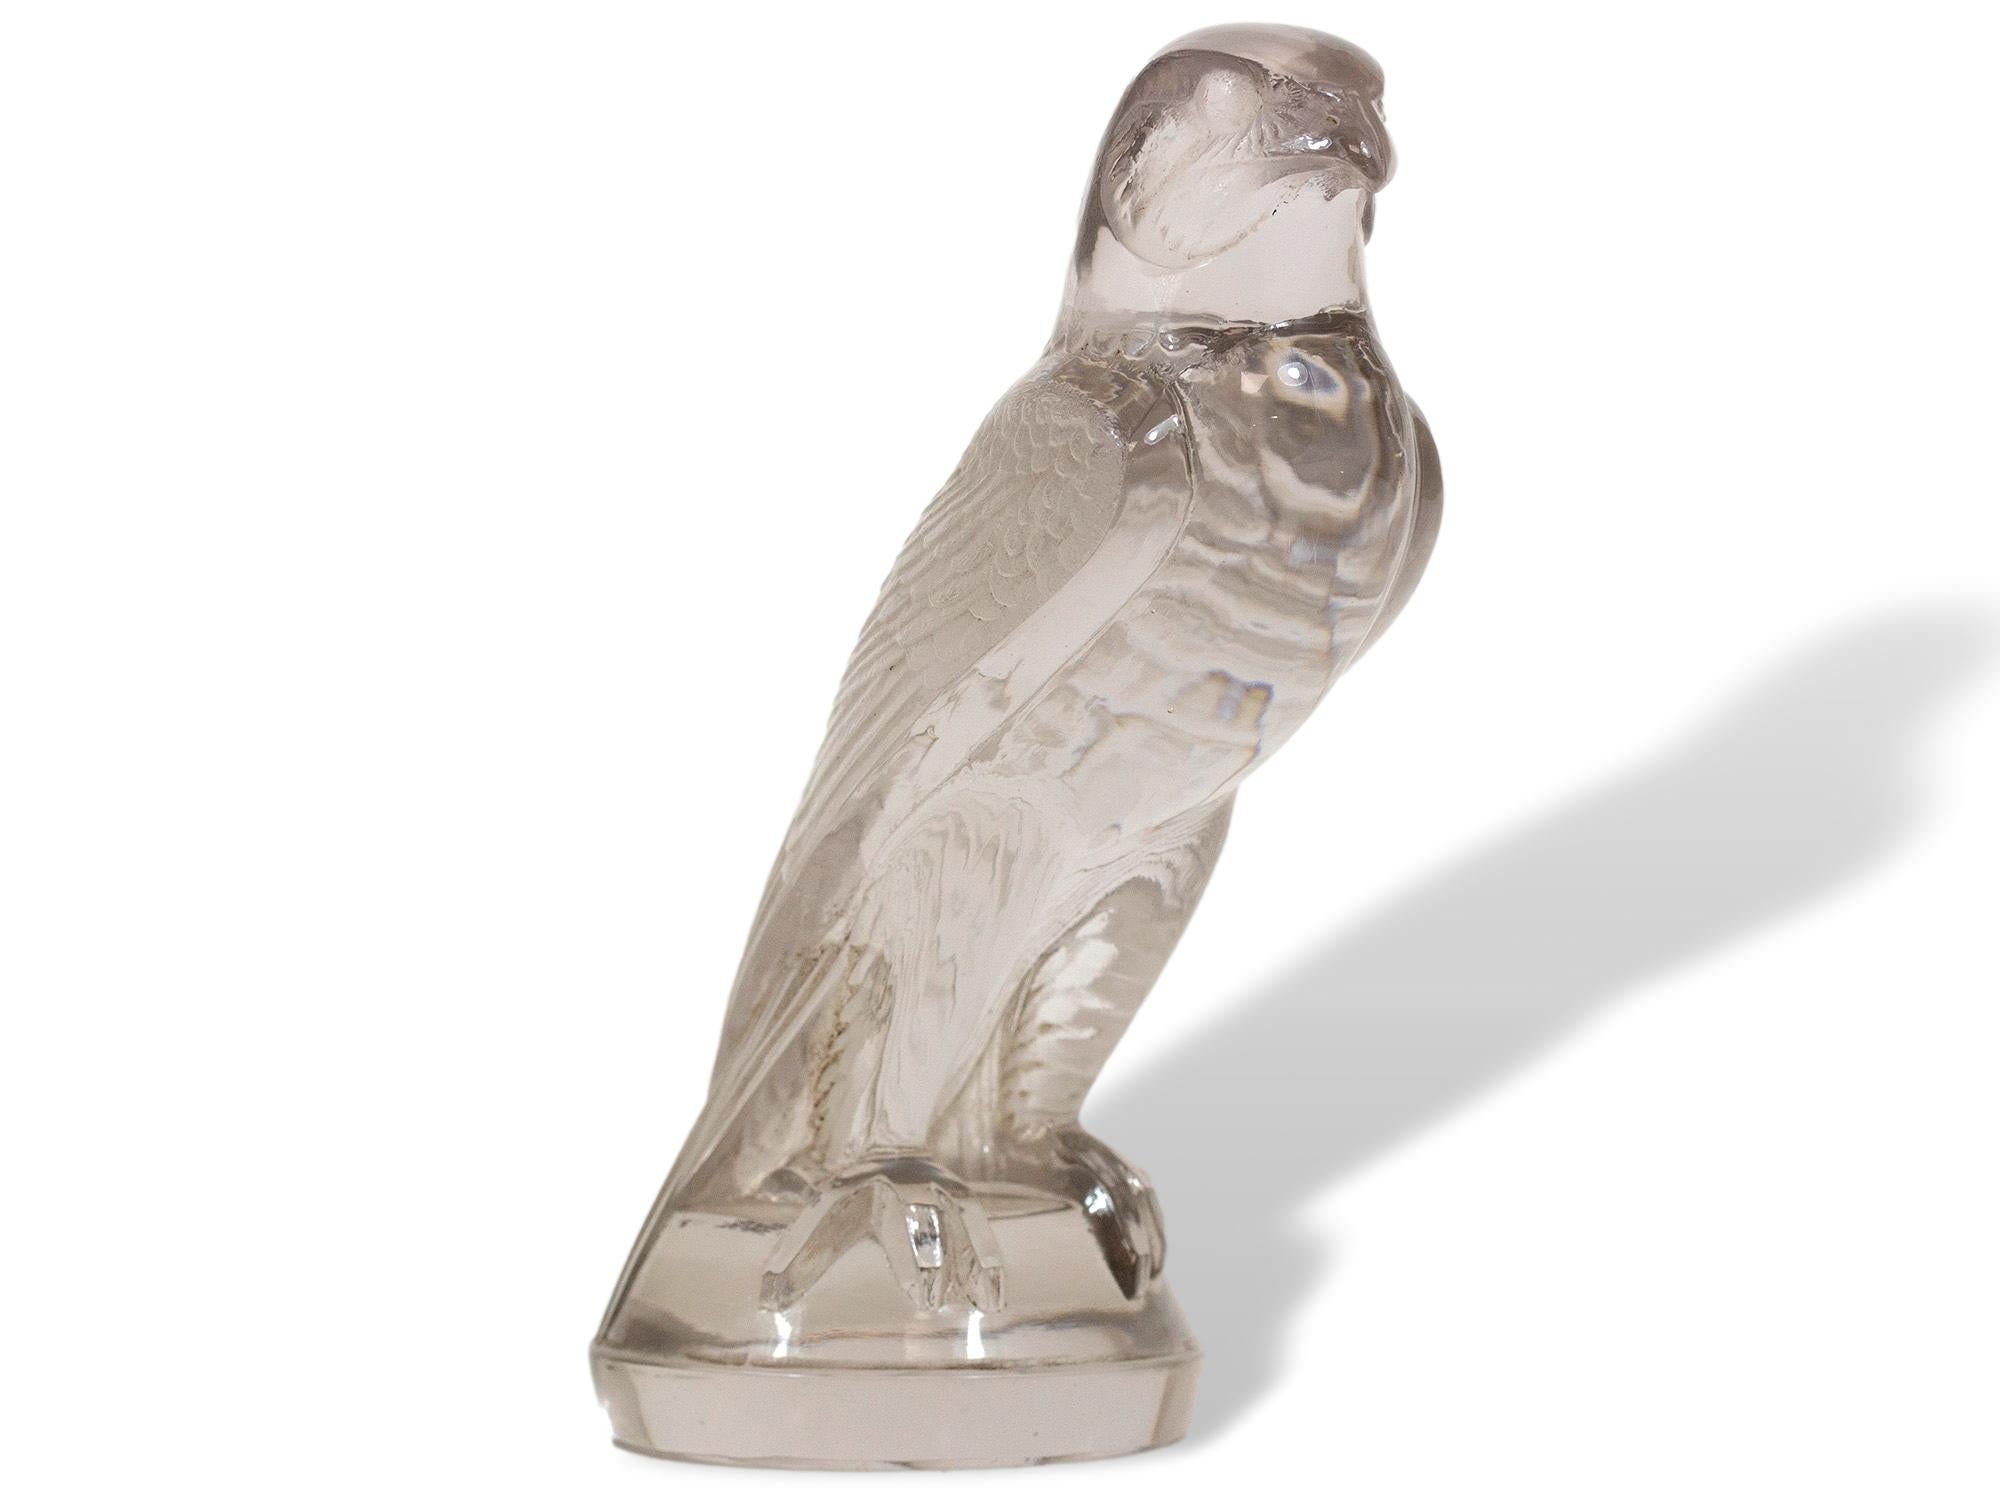 French Original Art Deco Rene Lalique Faucon (Falcon) Car Mascot For Sale